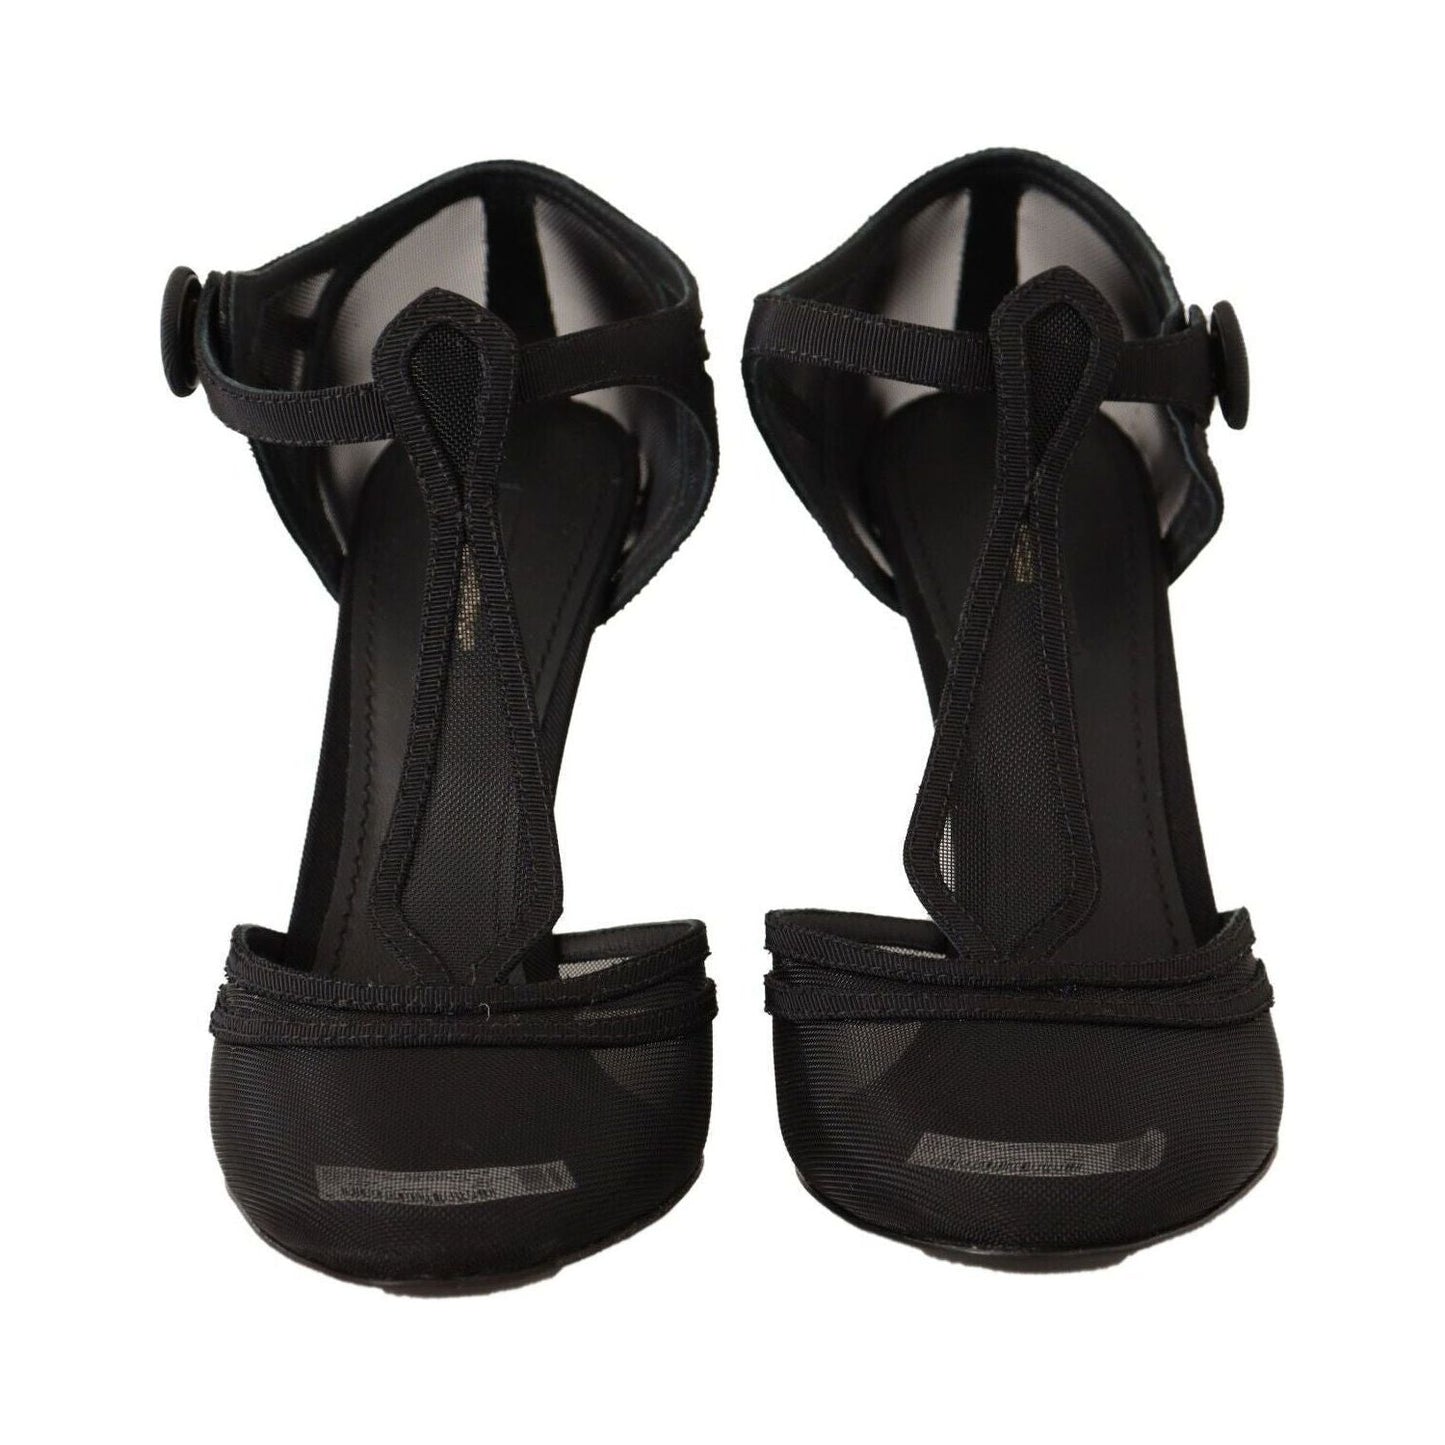 Dolce & Gabbana Elegant Mesh T-Strap Stiletto Pumps black-mesh-t-strap-stiletto-heels-pumps-shoes s-l1600-1-206-792731a0-f80.jpg